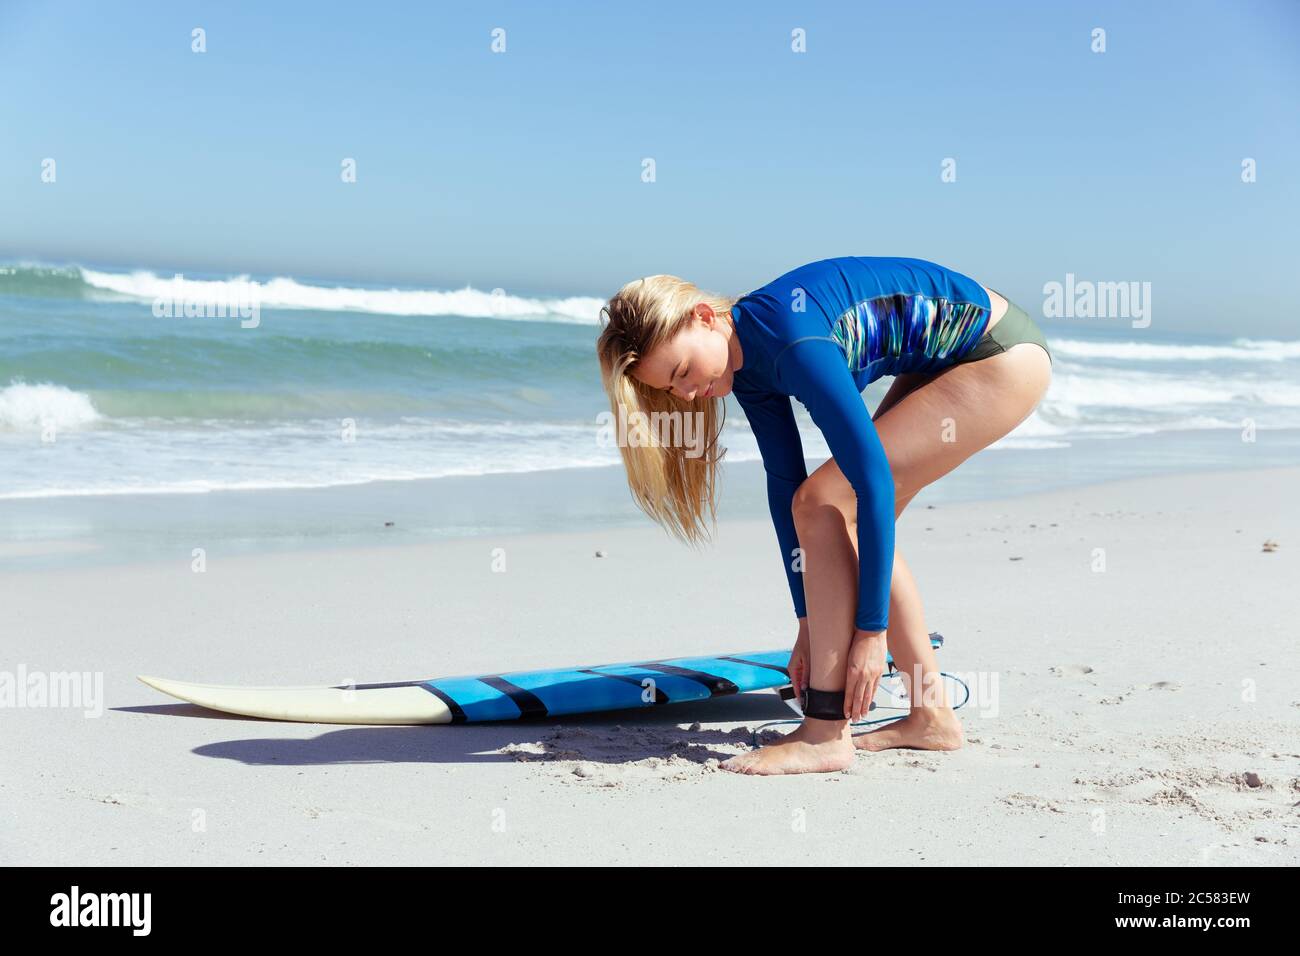 Frau, die sich auf das Surfen am Strand vorbereitet Stockfoto